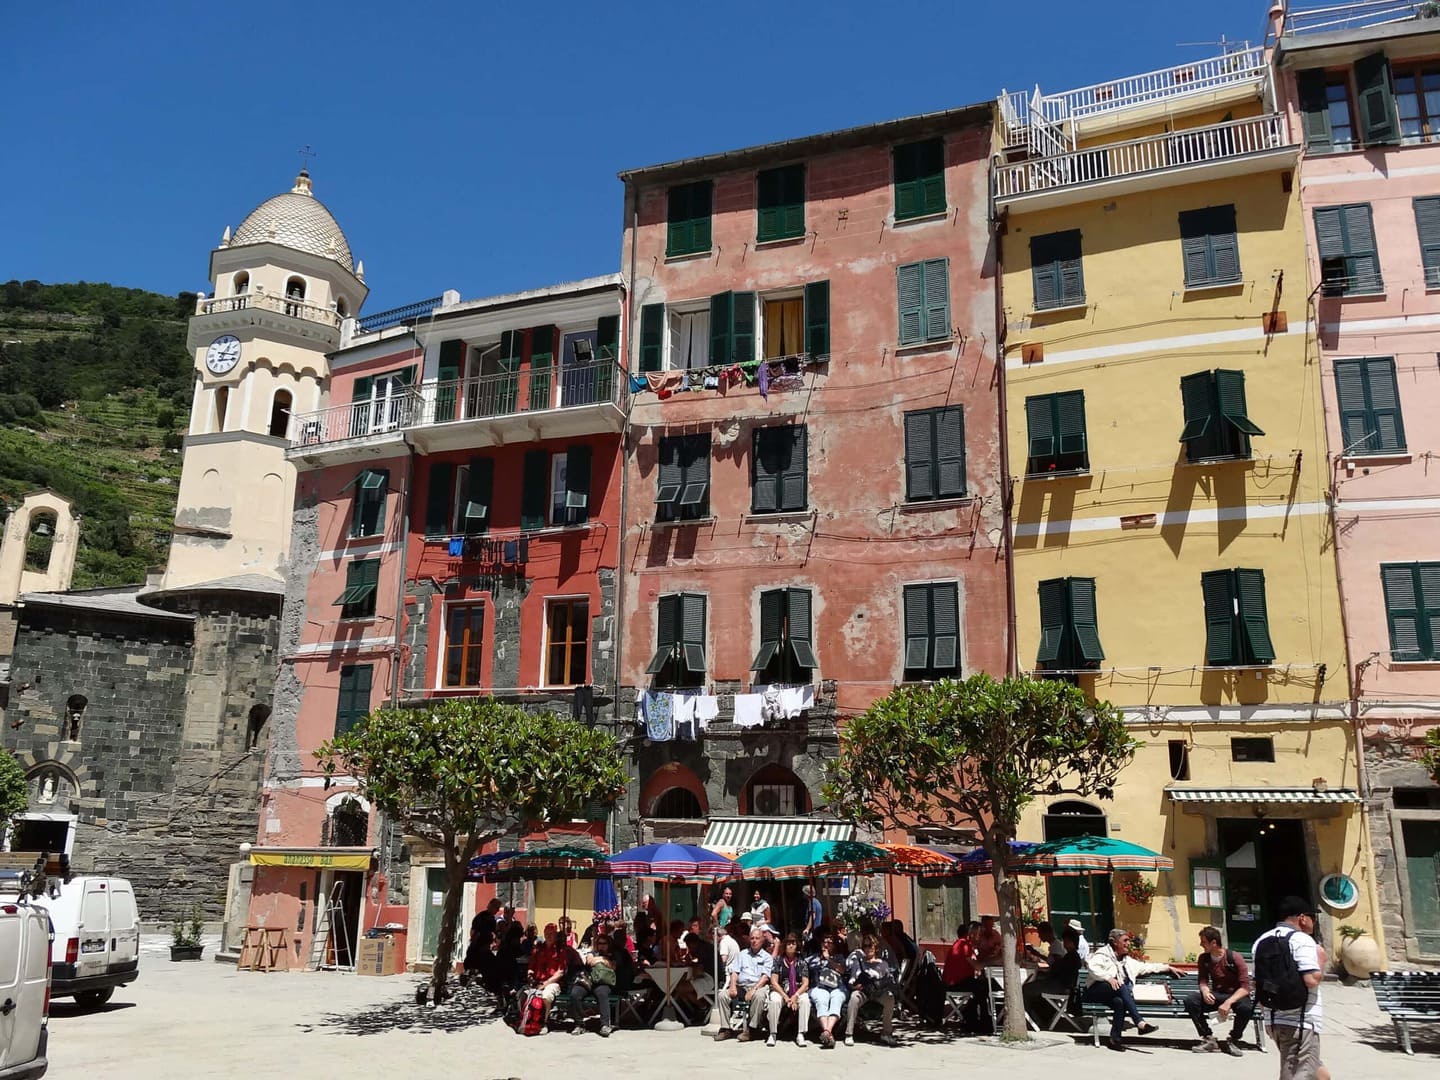 Wanderreise Italien Cinque Terre - typische bunte Häuser der Cinque Terre